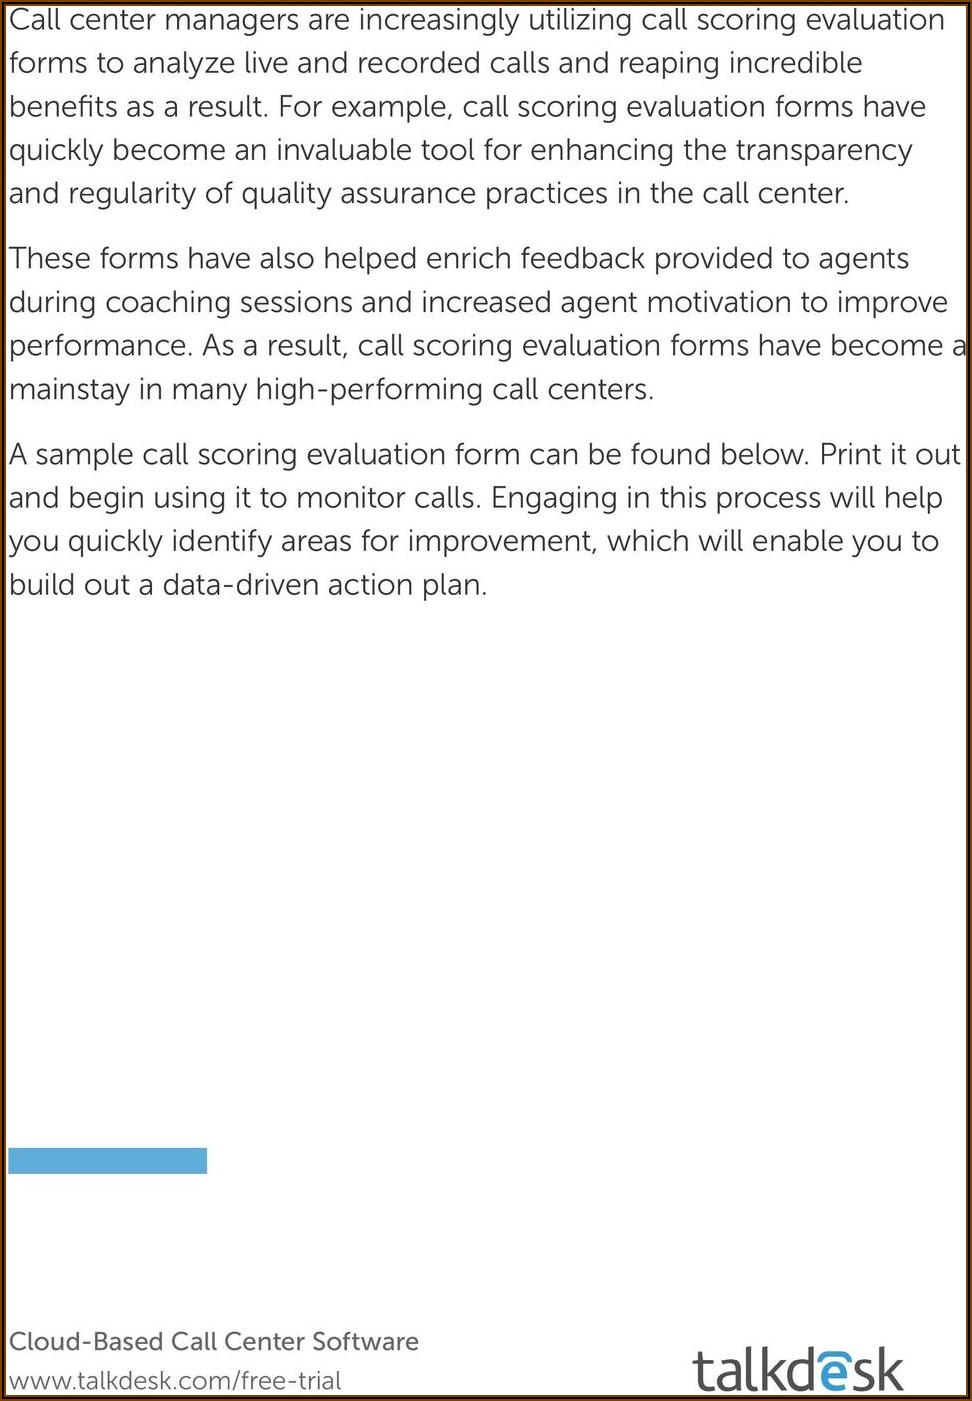 Call Center Quality Assurance Form Examples